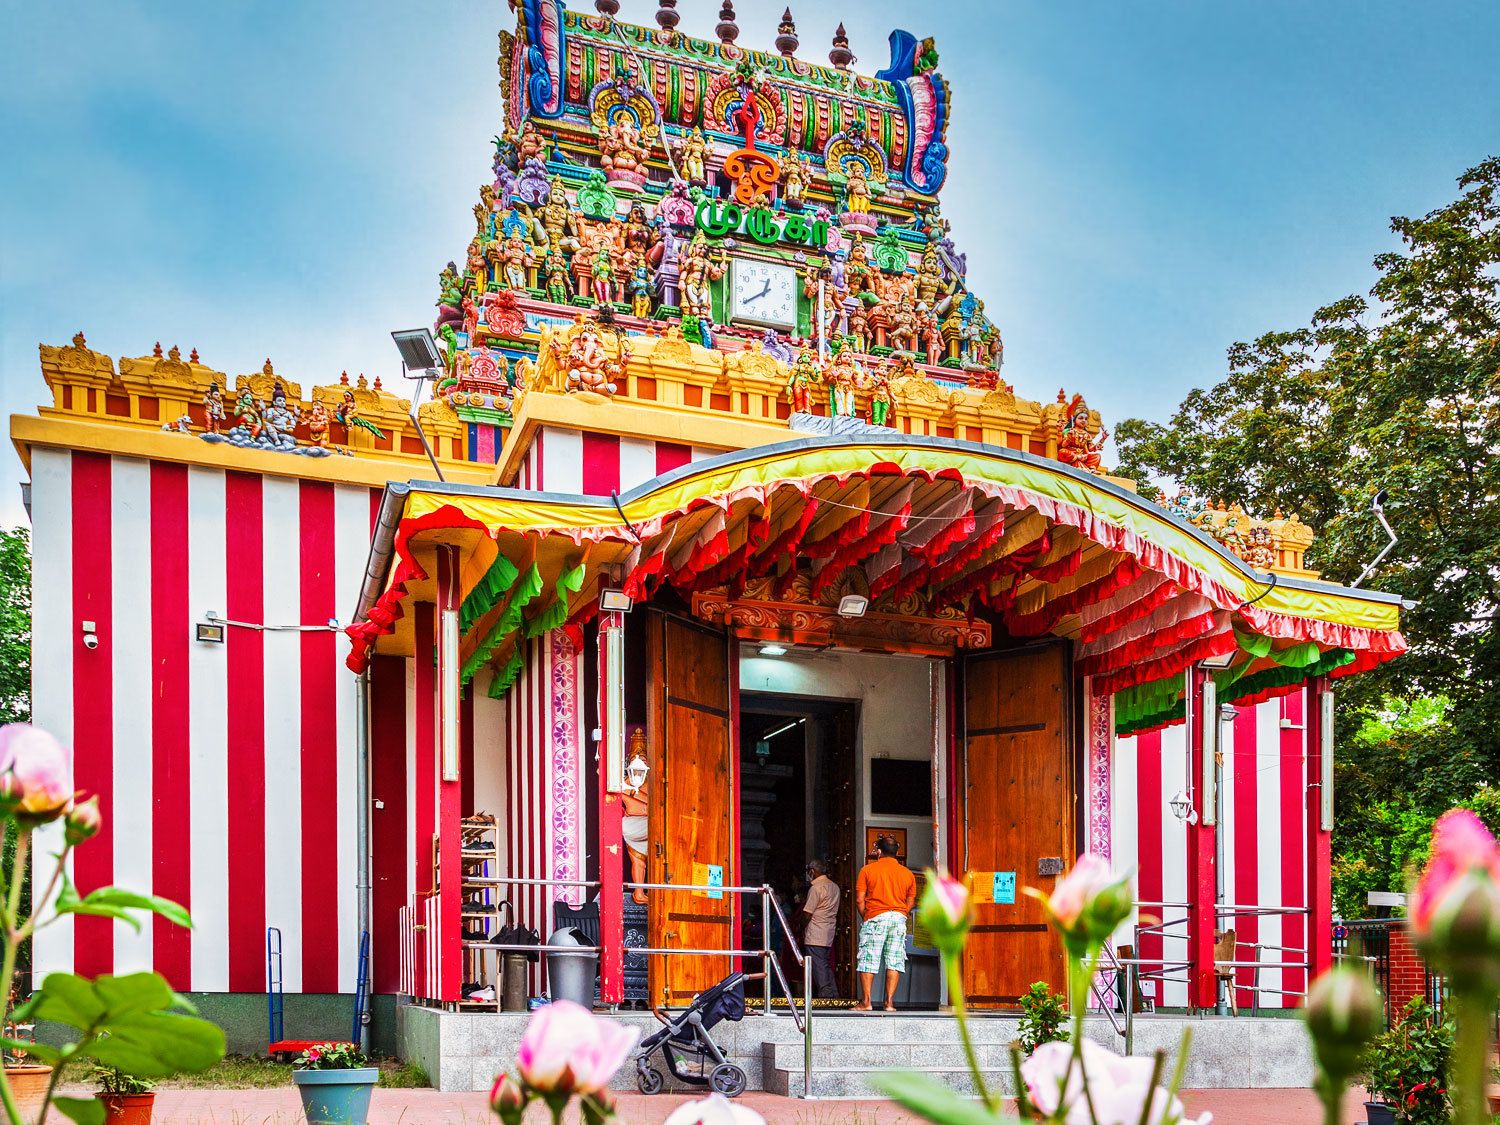 Ein Hindutempel. Der unterer Teil des Tempels ist rot-weiß gestreift gestrichen. Darüber eine Art Turm mit vielen hinduistischen Göttern. Die Götter sind sehr farbenfroh angemalt. 